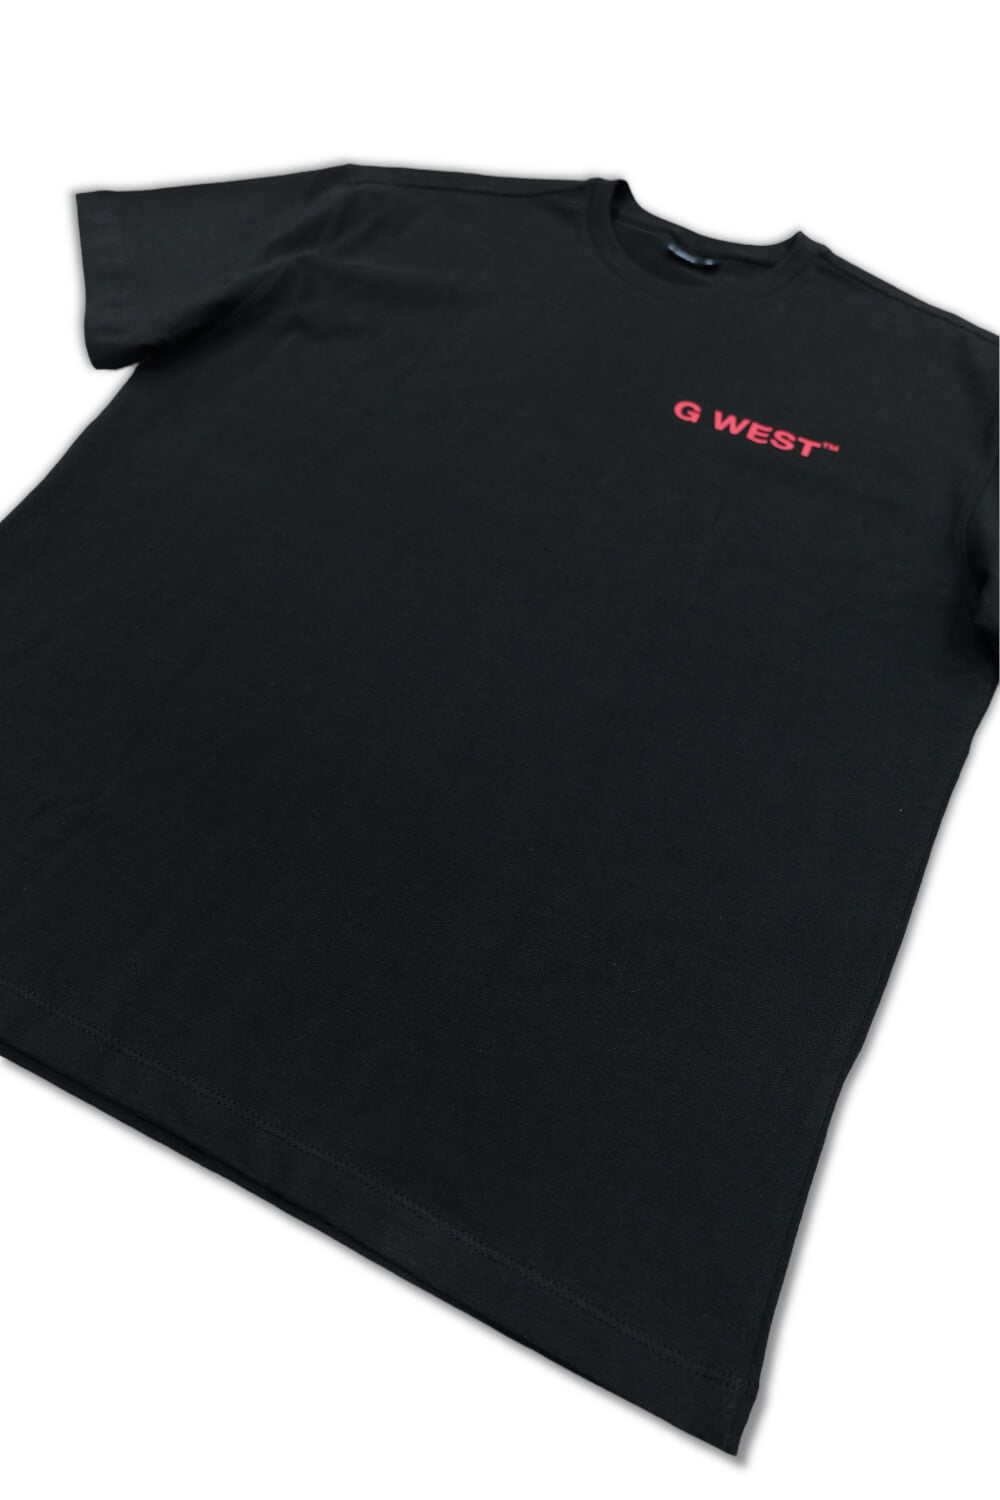 G West Skelleton Roses T-shirt -Black